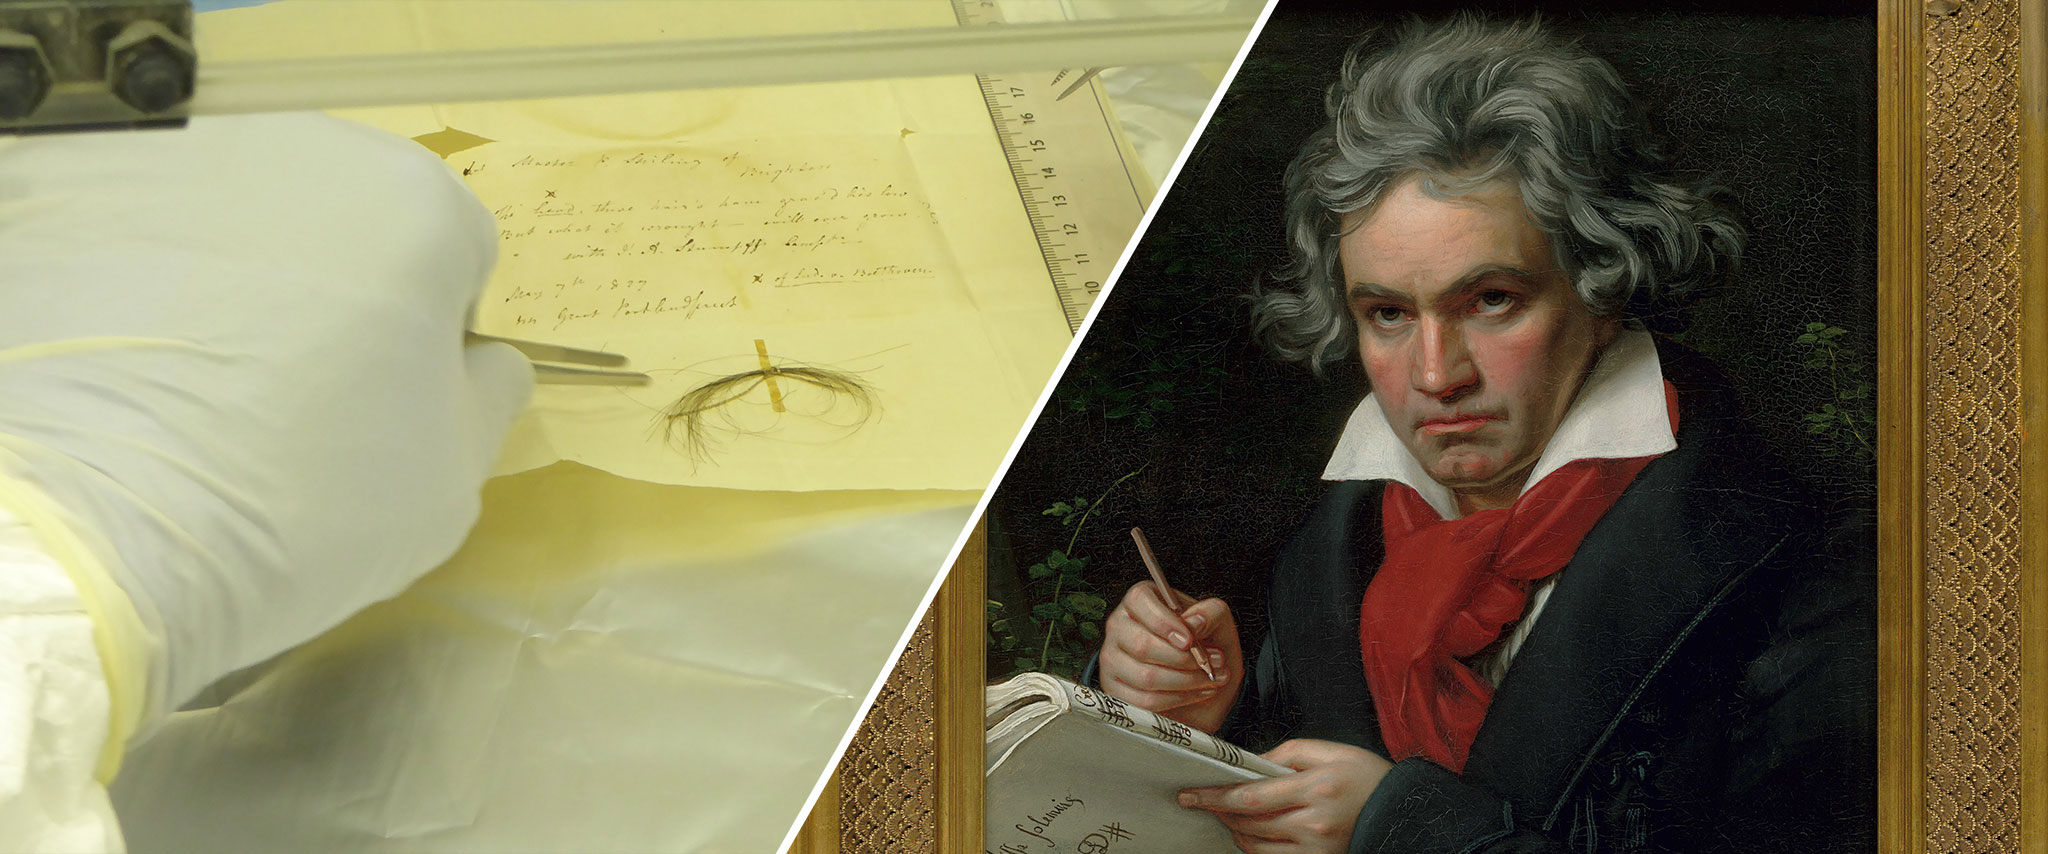 Beethovens Genom gibt Aufschluss über Gesundheit und Familiengeschichte des Komponisten